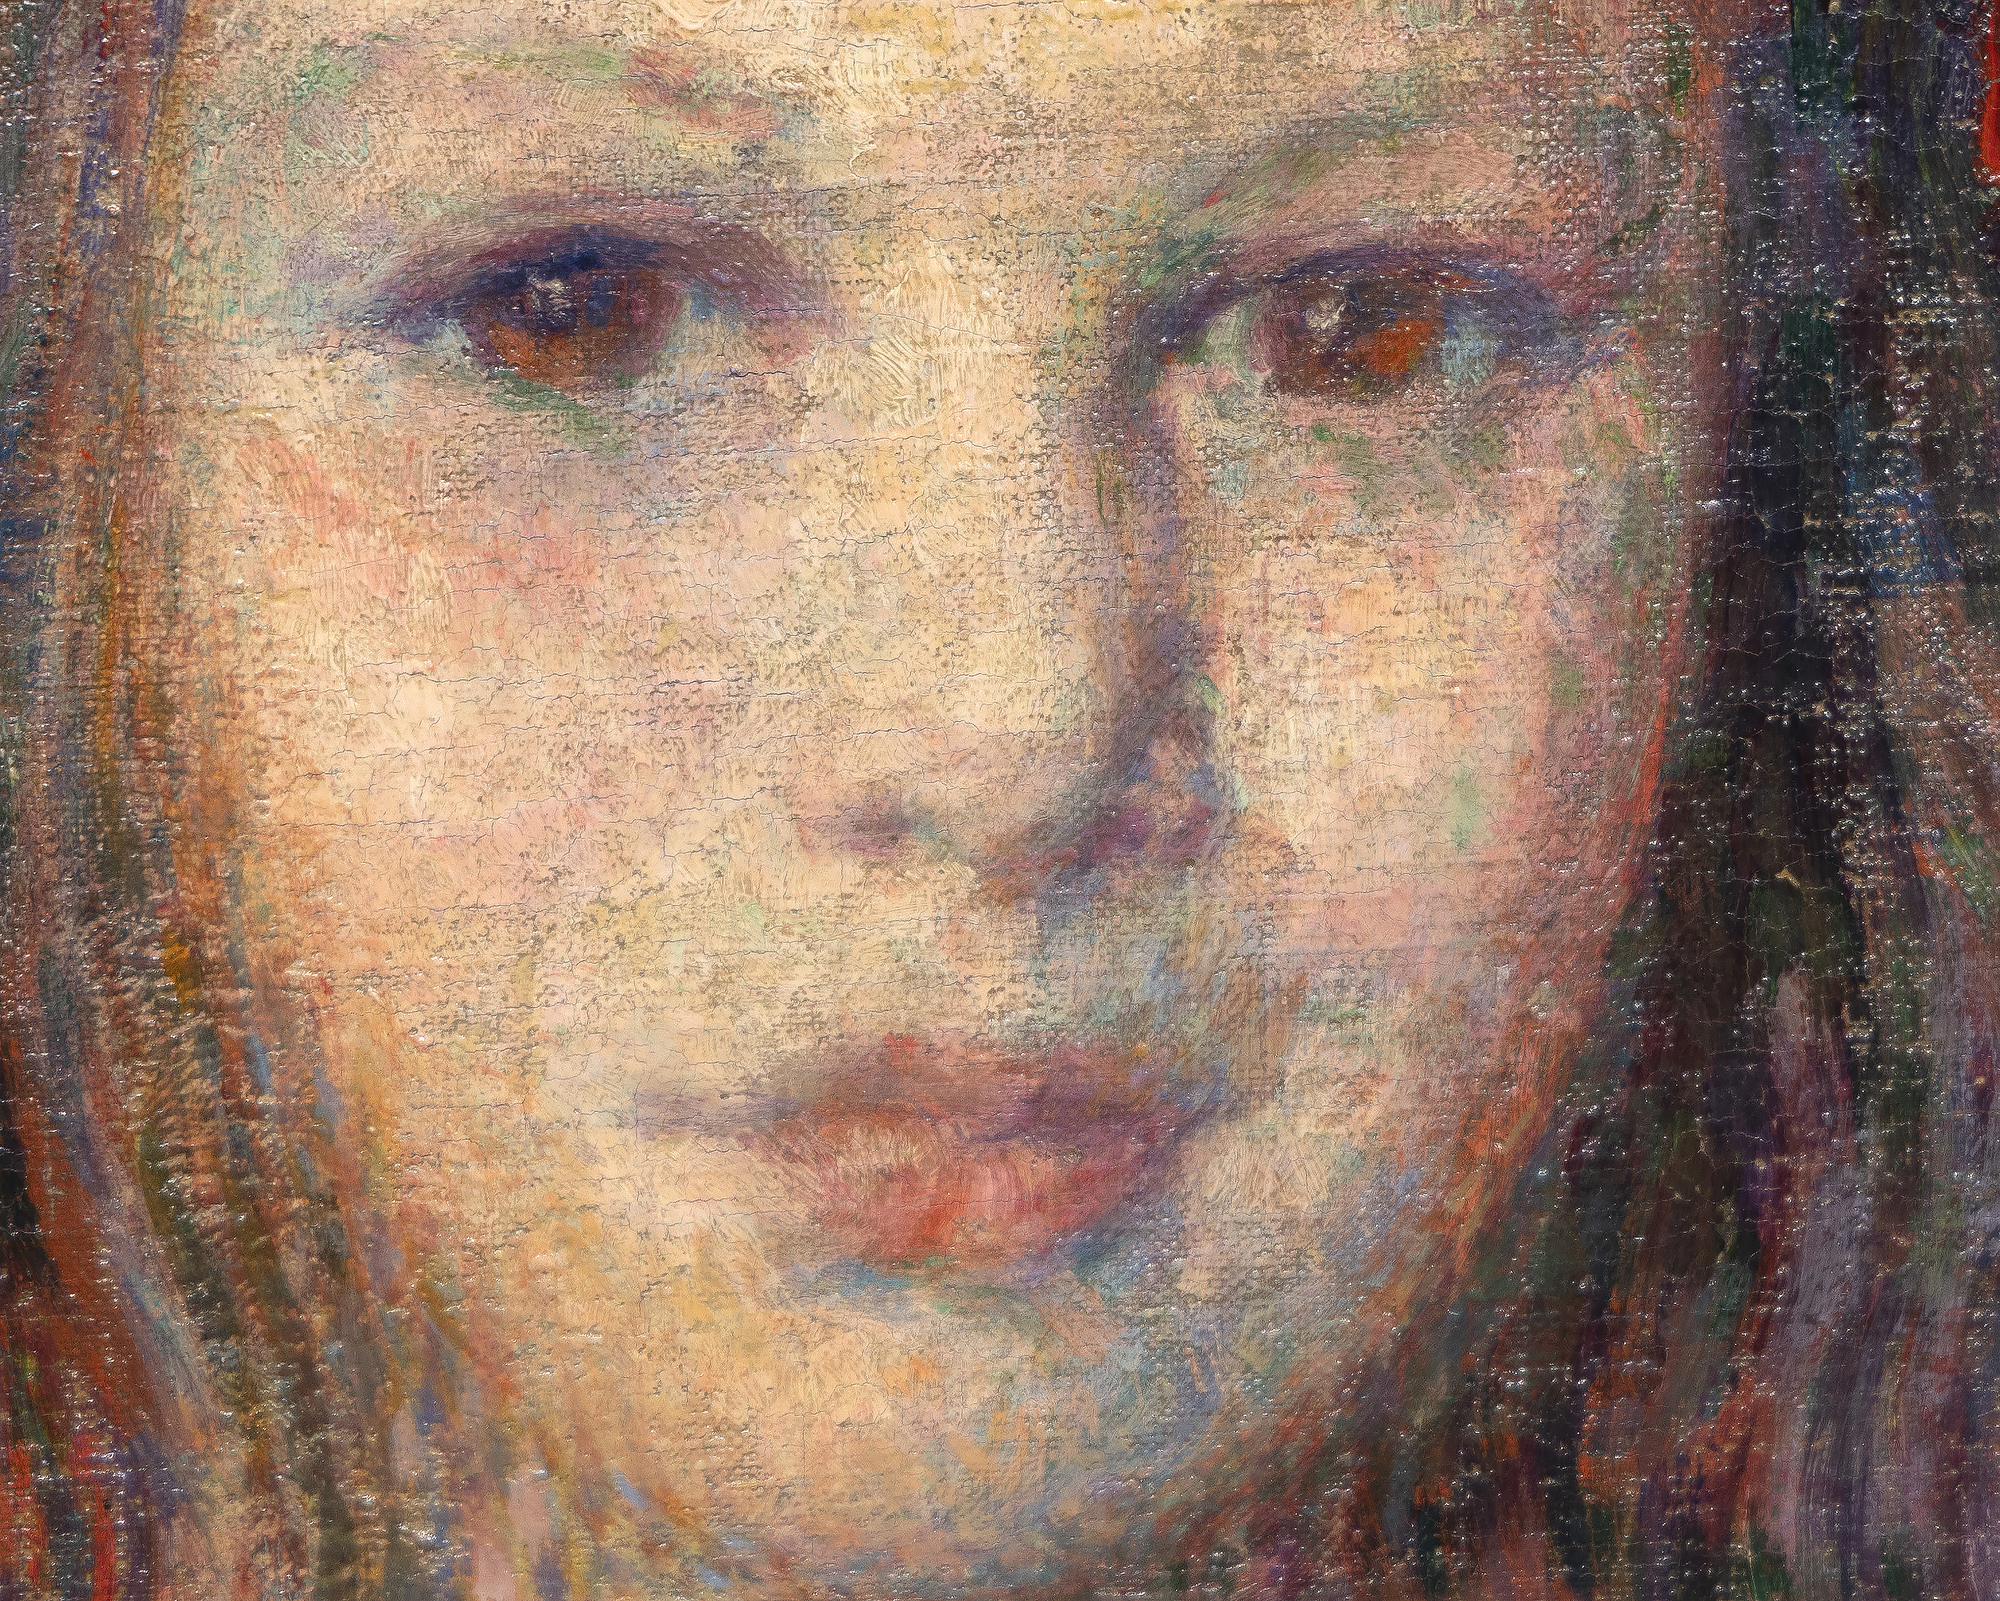 1906年に描かれたテオ・ファン・ライセルベルヘの「シルヴィ・ラコンの肖像」は、当時最も洗練され、一貫した肖像画家の一人による古典的な傑作である。色彩は調和がとれており、筆致は力強く、素材に合わせたもので、彼女の体や表情は真実味を帯びたものである。ゴーギャンと親交があり、ボナール、ドニ、ヴュイヤールらとレ・ナビのメンバーだった親友の画家ジョルジュ・ラコムの娘である。私たちが今、シルヴィ・ラコンブのことを知ることができるのは、ヴァン・ライセルベルヘが微妙な表情を表現することに長けており、注意深い観察と細部へのこだわりによって、彼女の内面への洞察を与えてくれたからです。彼は、彼女の目をあなたの目に向けるという直接的な視線を選び、絵と私たちの物理的な関係にかかわらず、主題と鑑賞者の間に避けられない契約を結んでいるのです。この肖像画を描いたとき、ヴァン・ライセルベルグは点描画の技法をほとんど放棄していた。しかし、彼は引き続き色彩理論の指針を適用し、緑にピンクやモーヴといった赤の色合いを用いて、補色による調和のとれたアメリケーション・パレットを作り上げ、そこに強烈なアクセントとして、彼女の頭の横に非対称に置かれた強烈な彩度の赤いリボンが目を引きます。